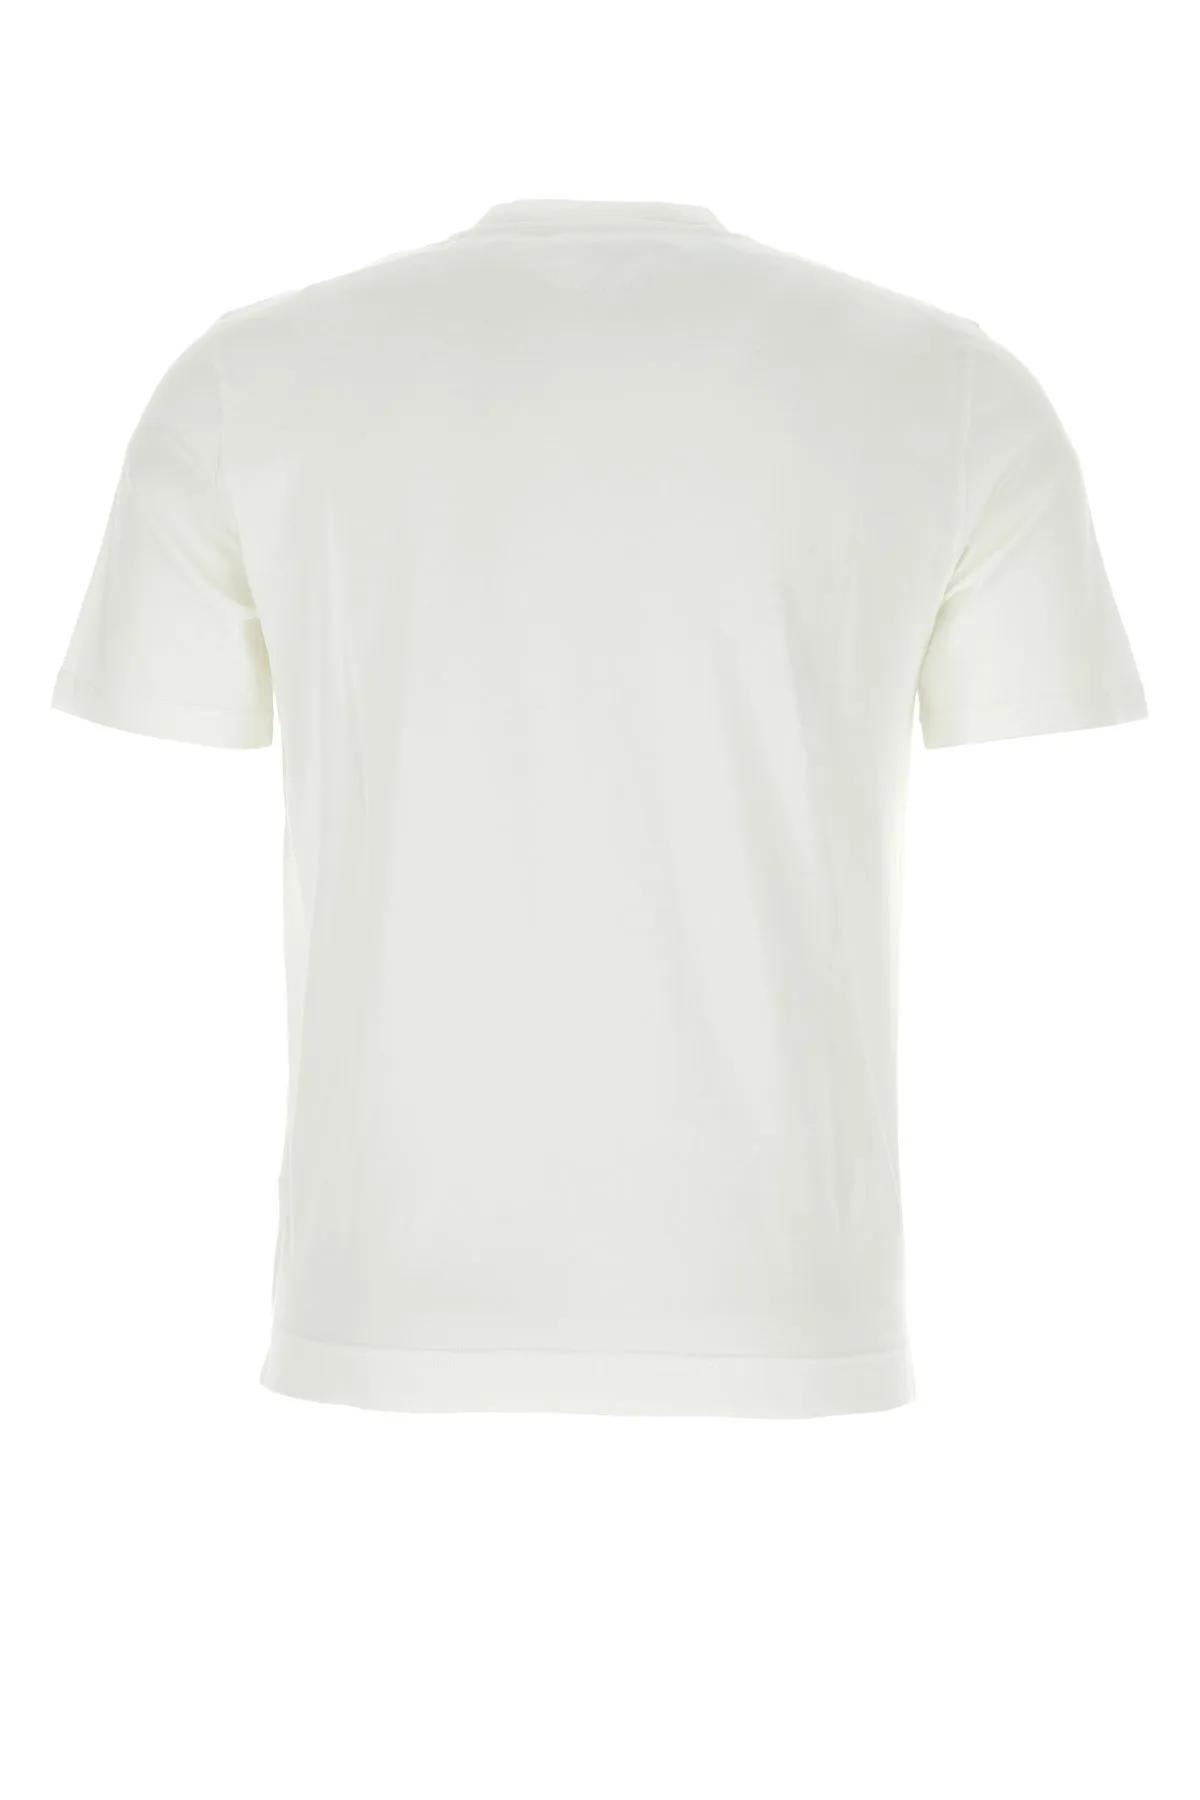 Shop Fedeli White Cotton T-shirt